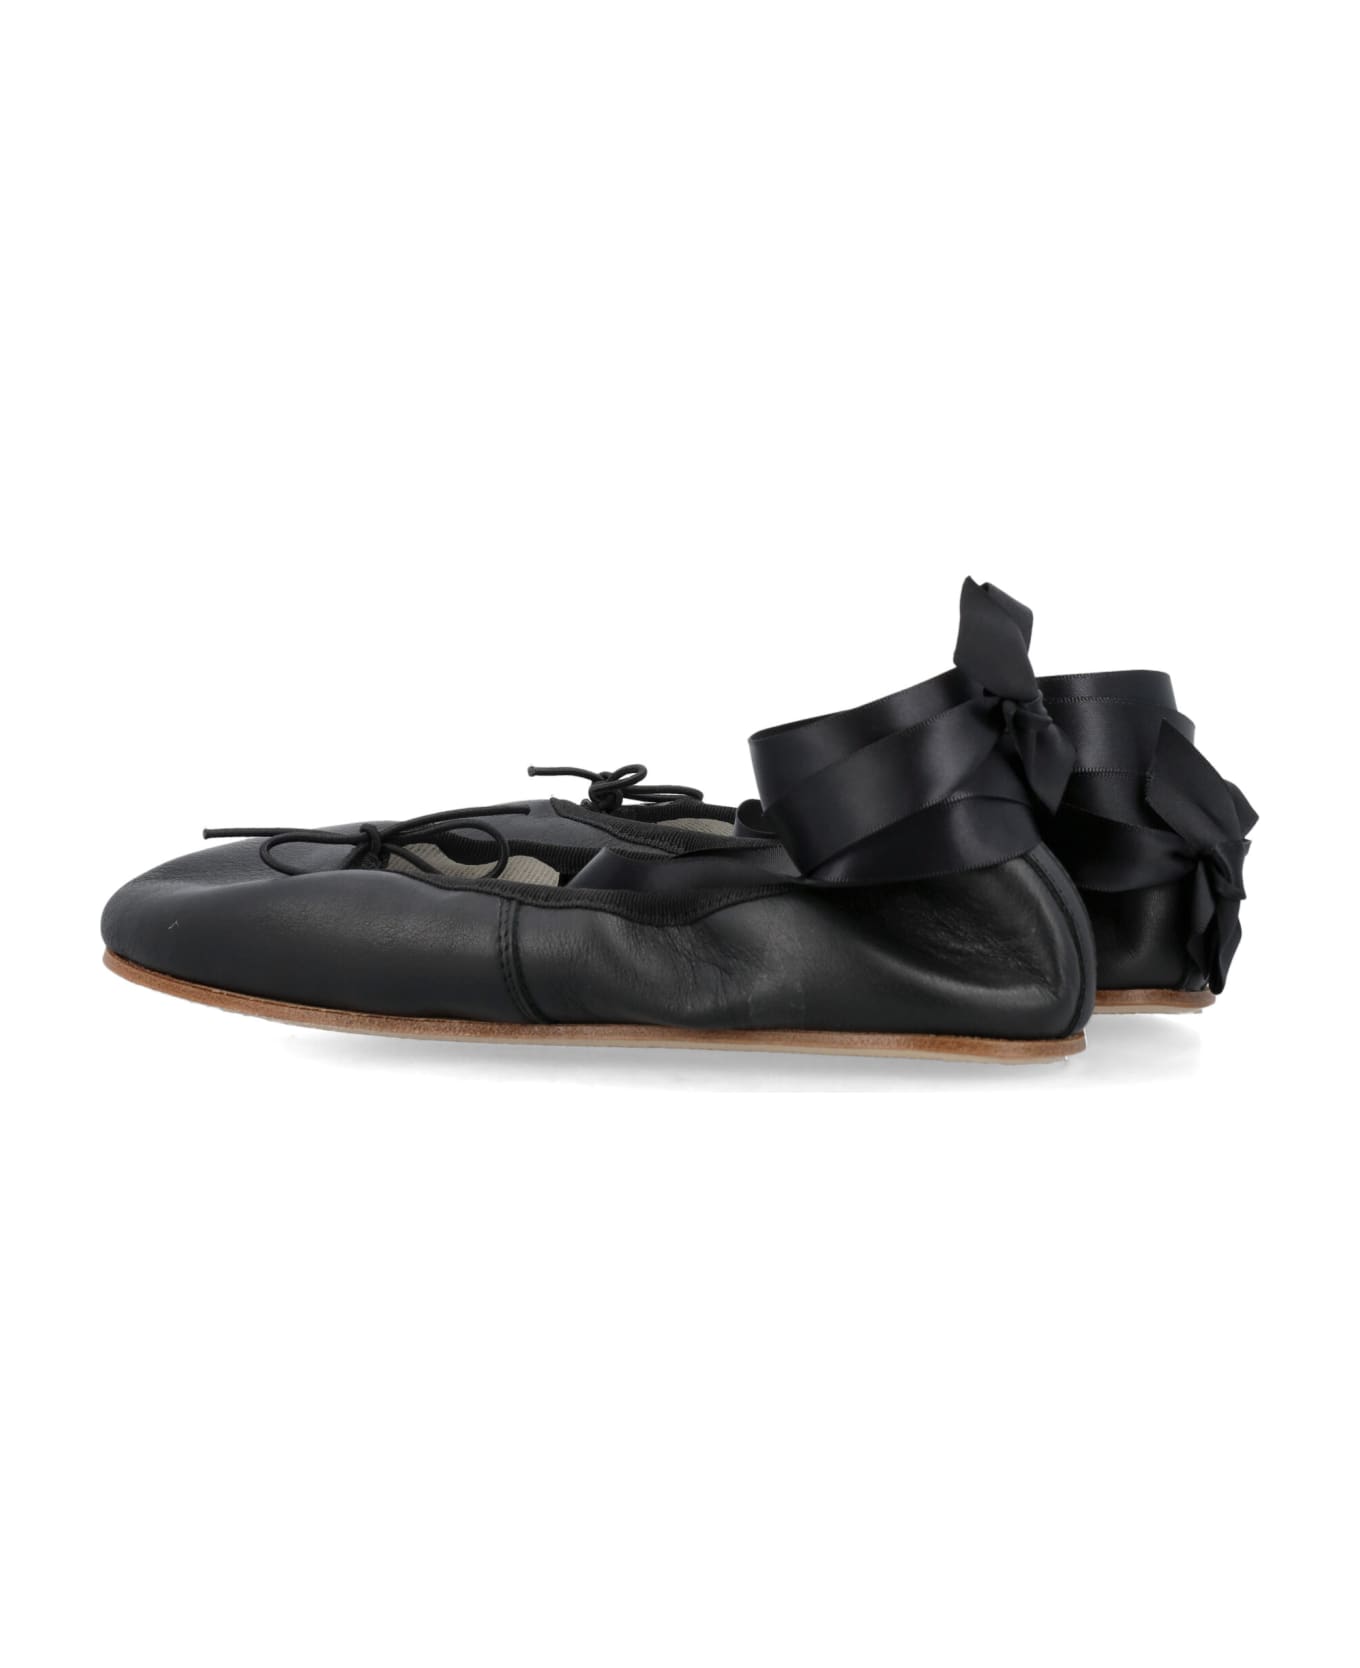 Repetto Sophia Ballerina Shoes - Noir